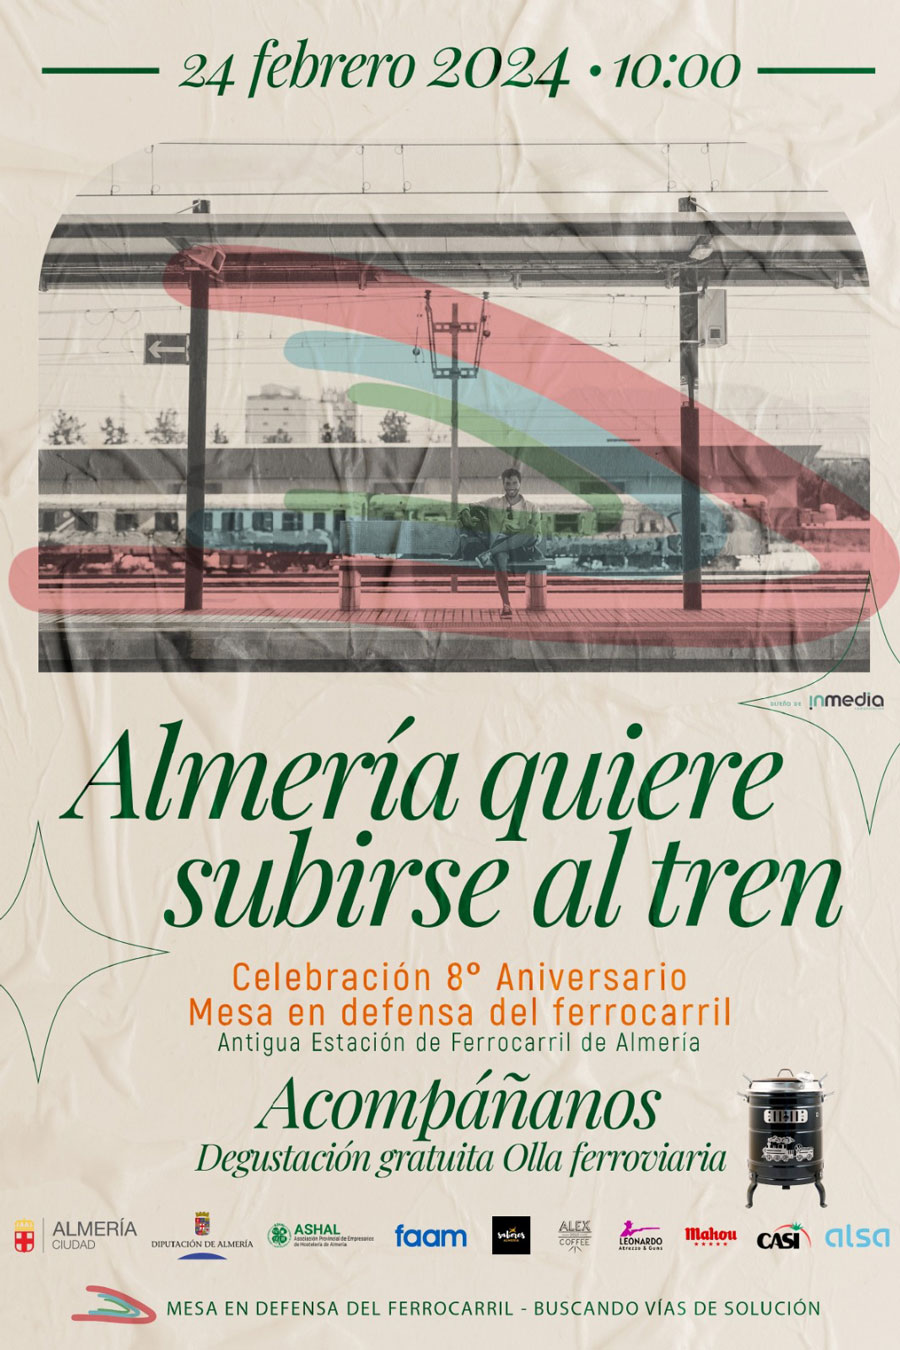 Almería quiere subirse al tren - 8º Aniversario - Mesa en defensa del ferrocarril